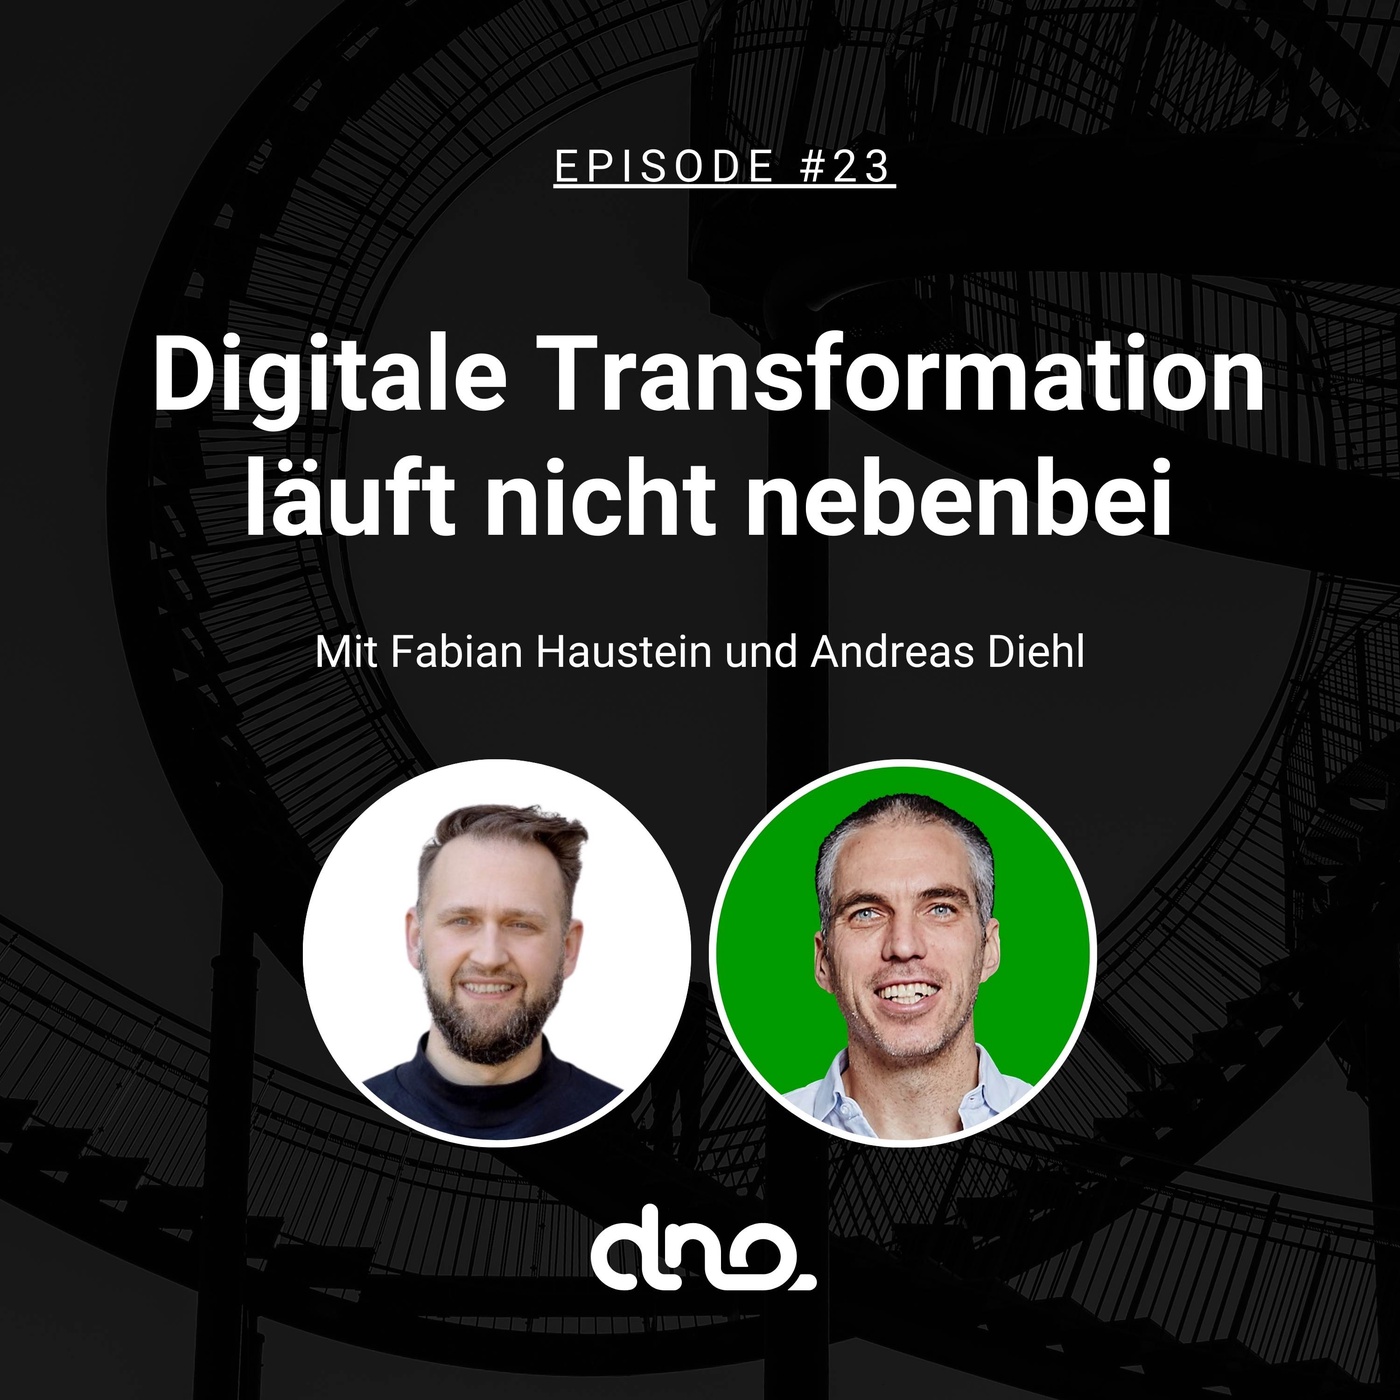 #23 Digitale Transformation läuft nicht nebenbei mit Fabian Haustein